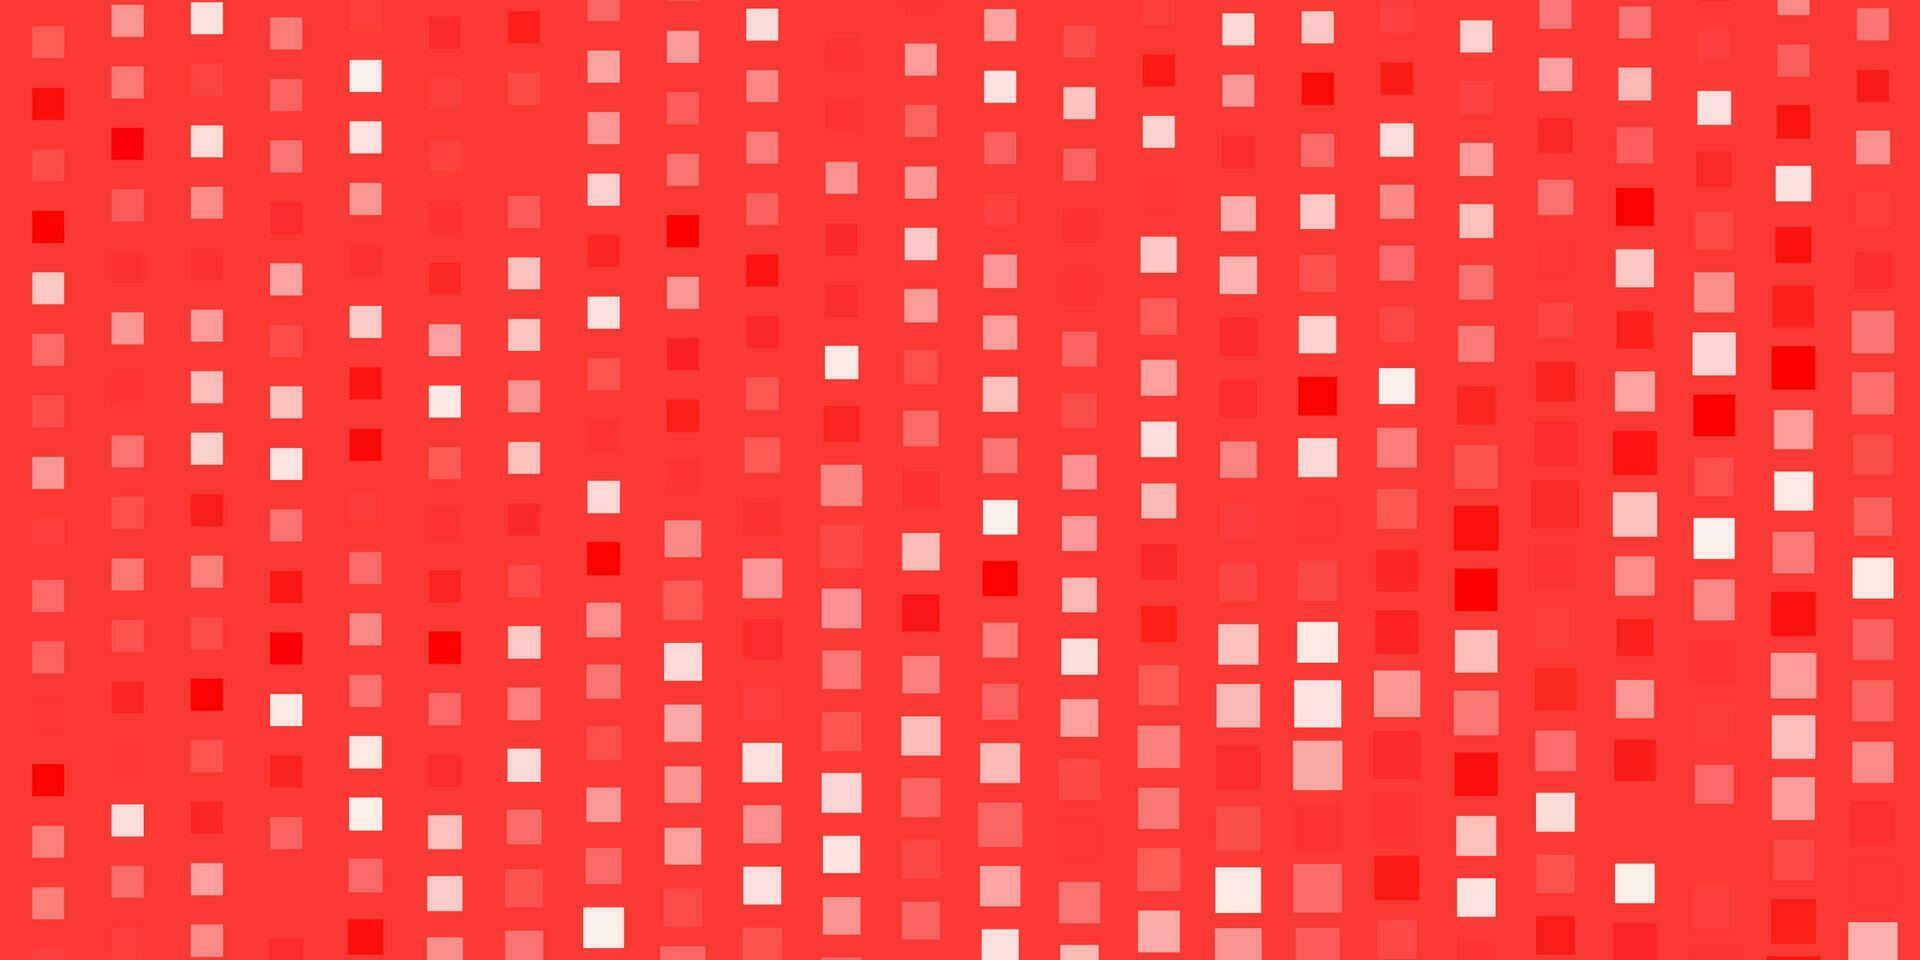 modelo de vetor vermelho claro com retângulos.